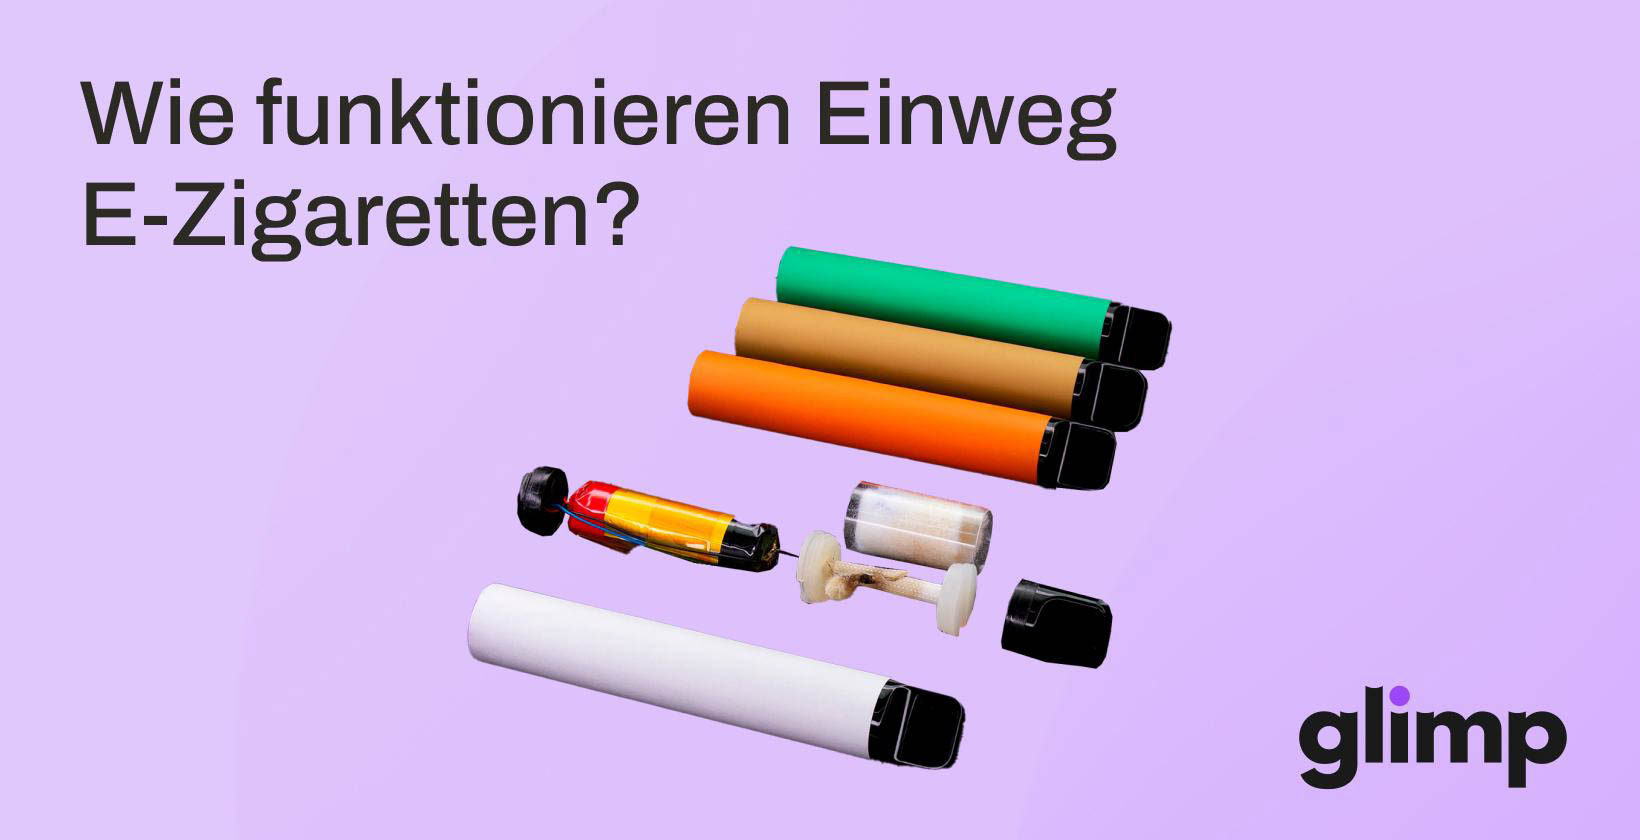 https://glimp.de/wp-content/uploads/e-zigarette/einweg-e-zigarette/Wie-funktionieren-und-was-sind-Einweg-E-Zigarette.jpg